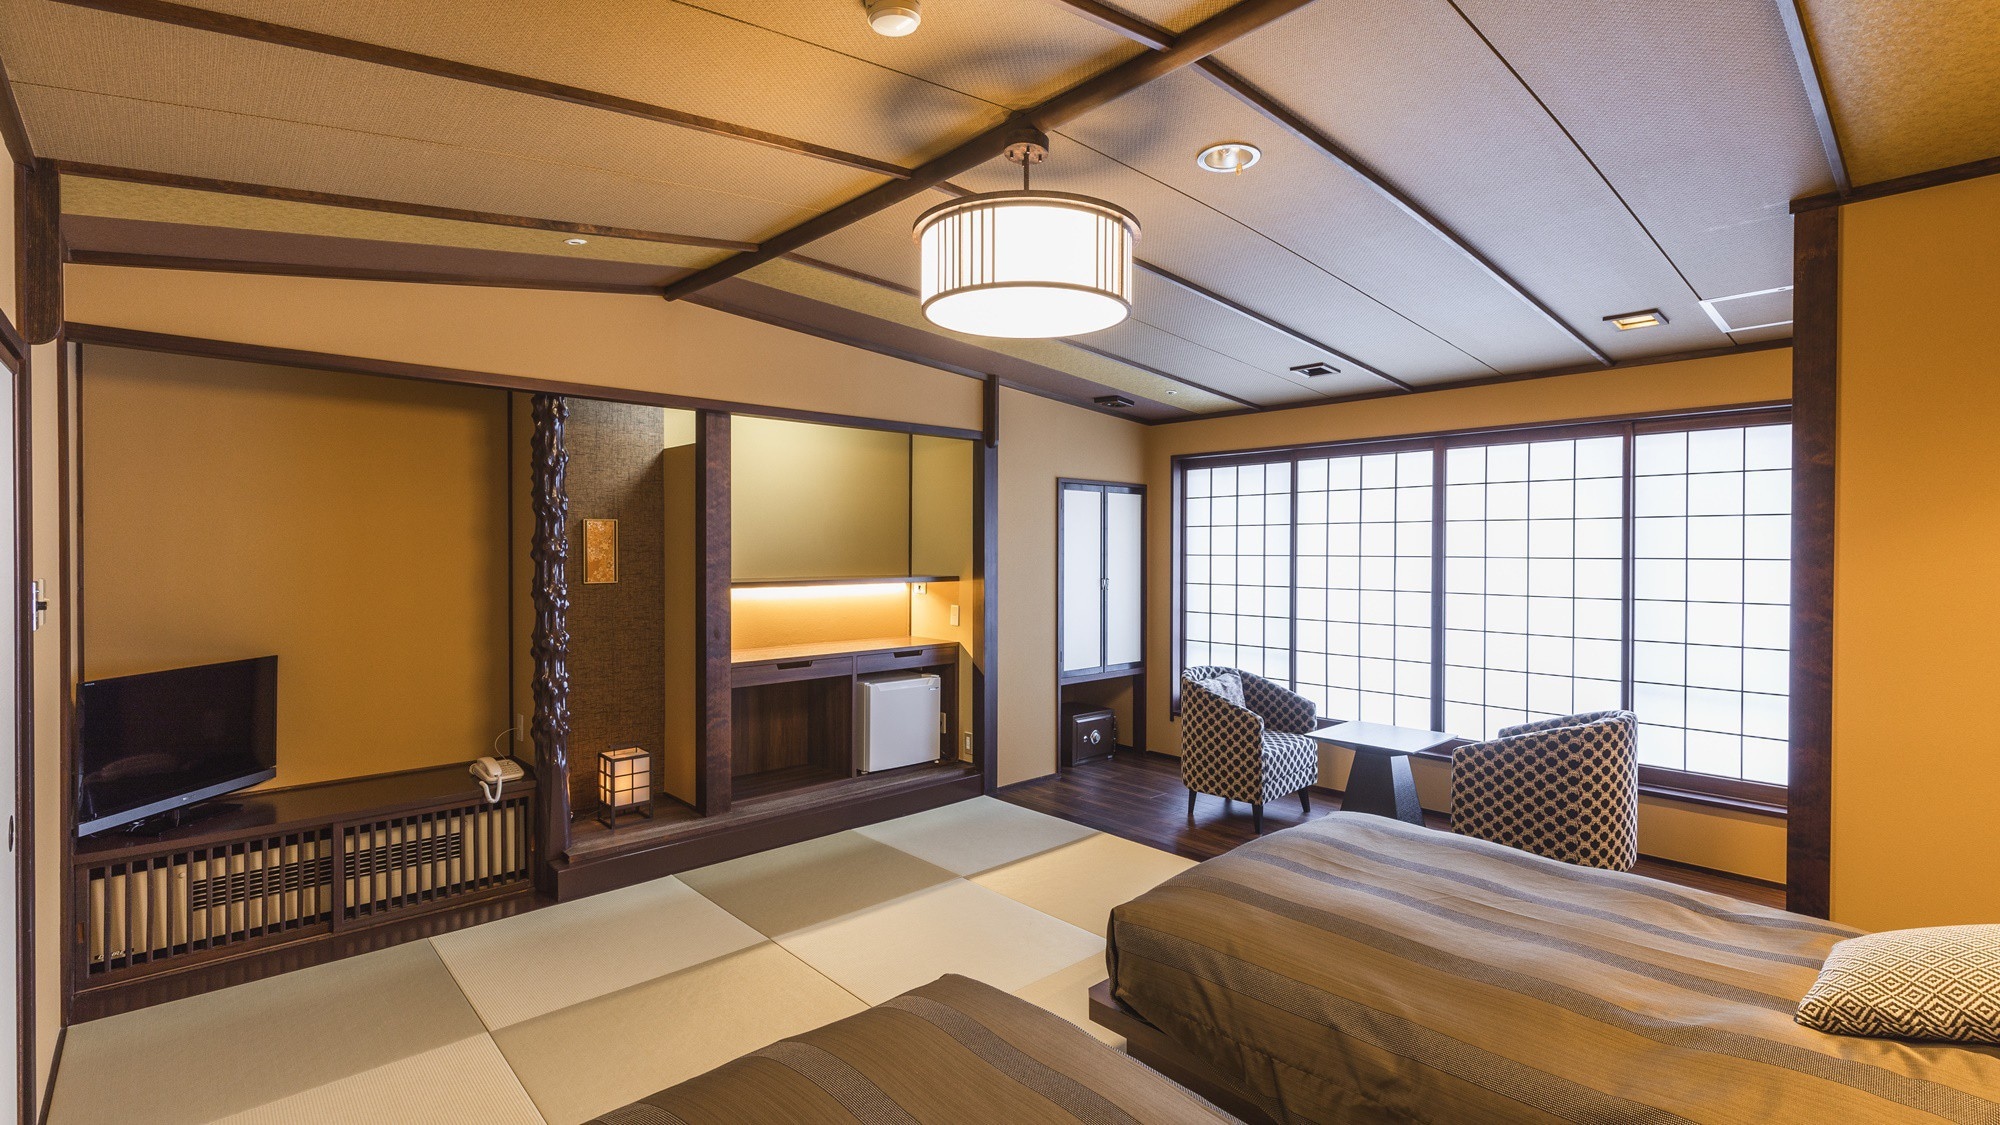 [Kembar modern Jepang] Pembaruan pada April 2021! Nikmati pemandangan yang berubah seiring musim dari kamar Anda.